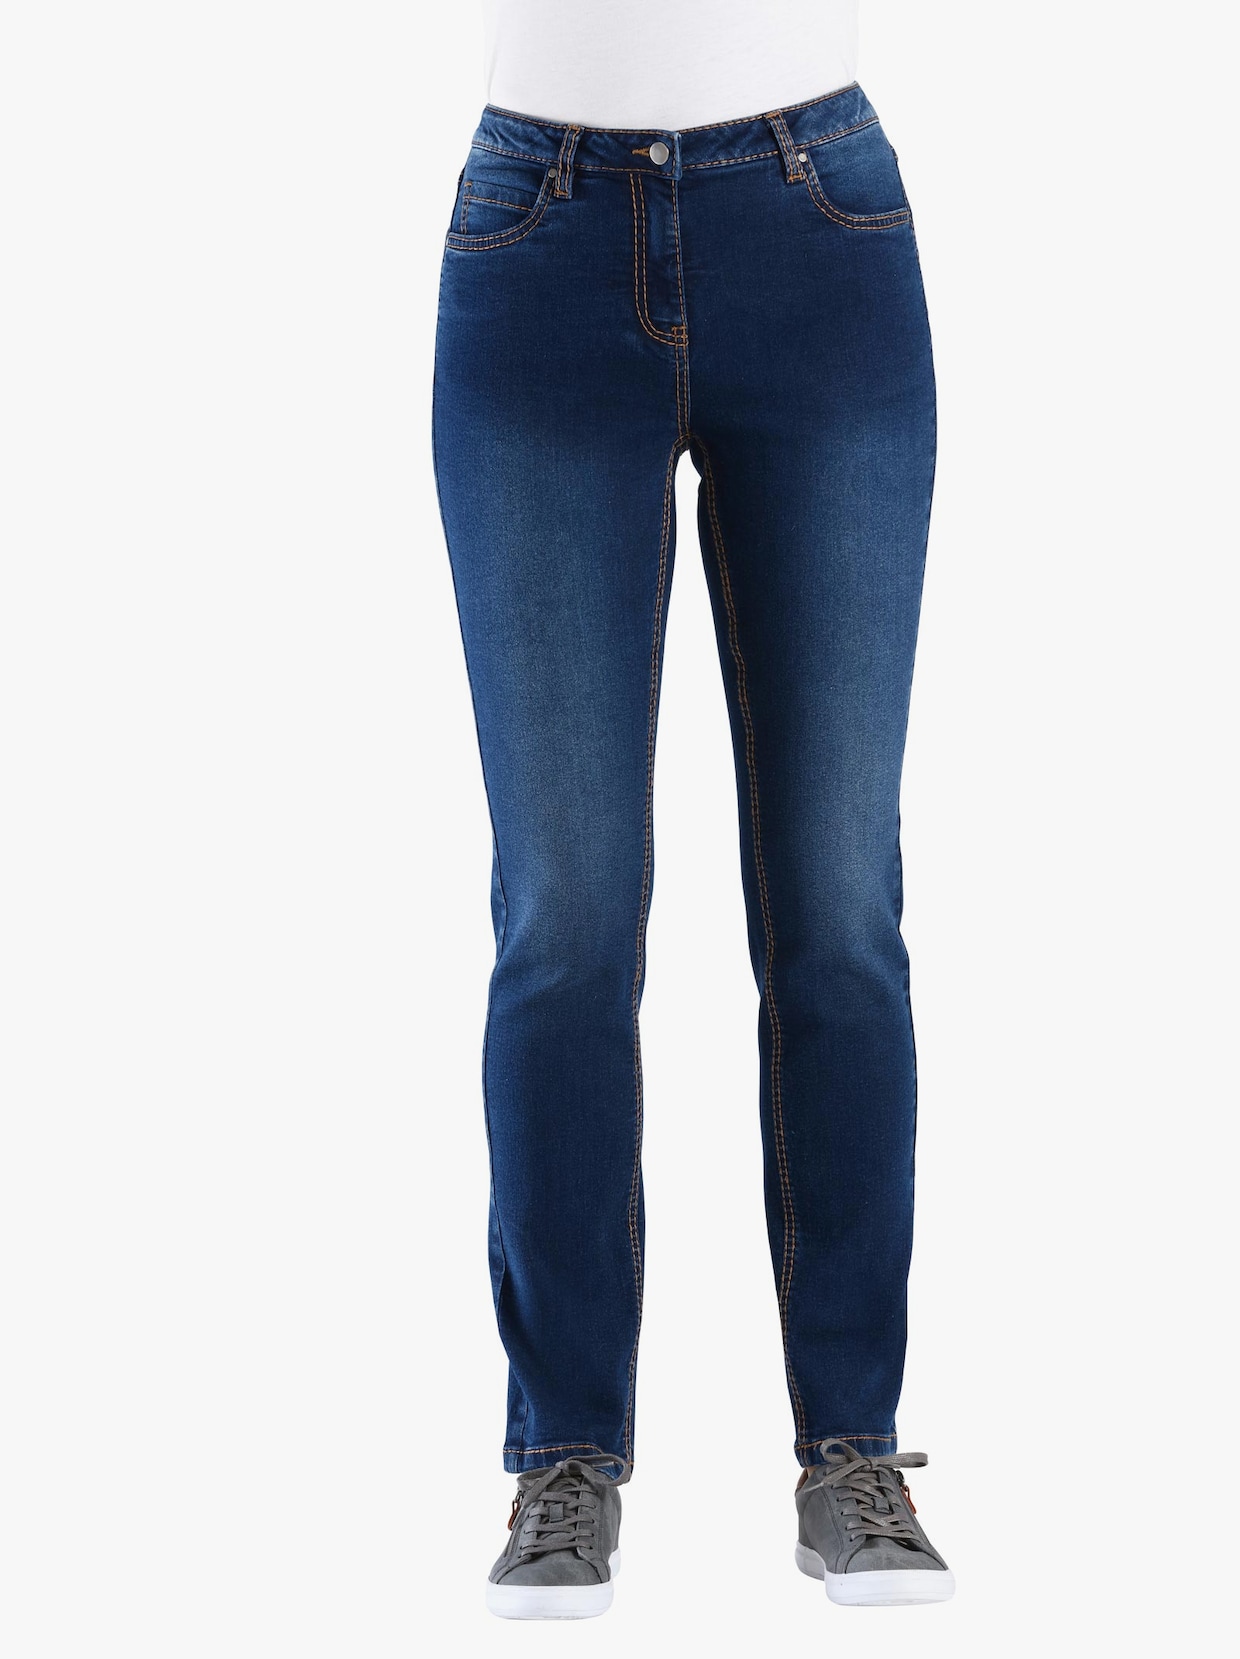 jeans - blue-stonewashed